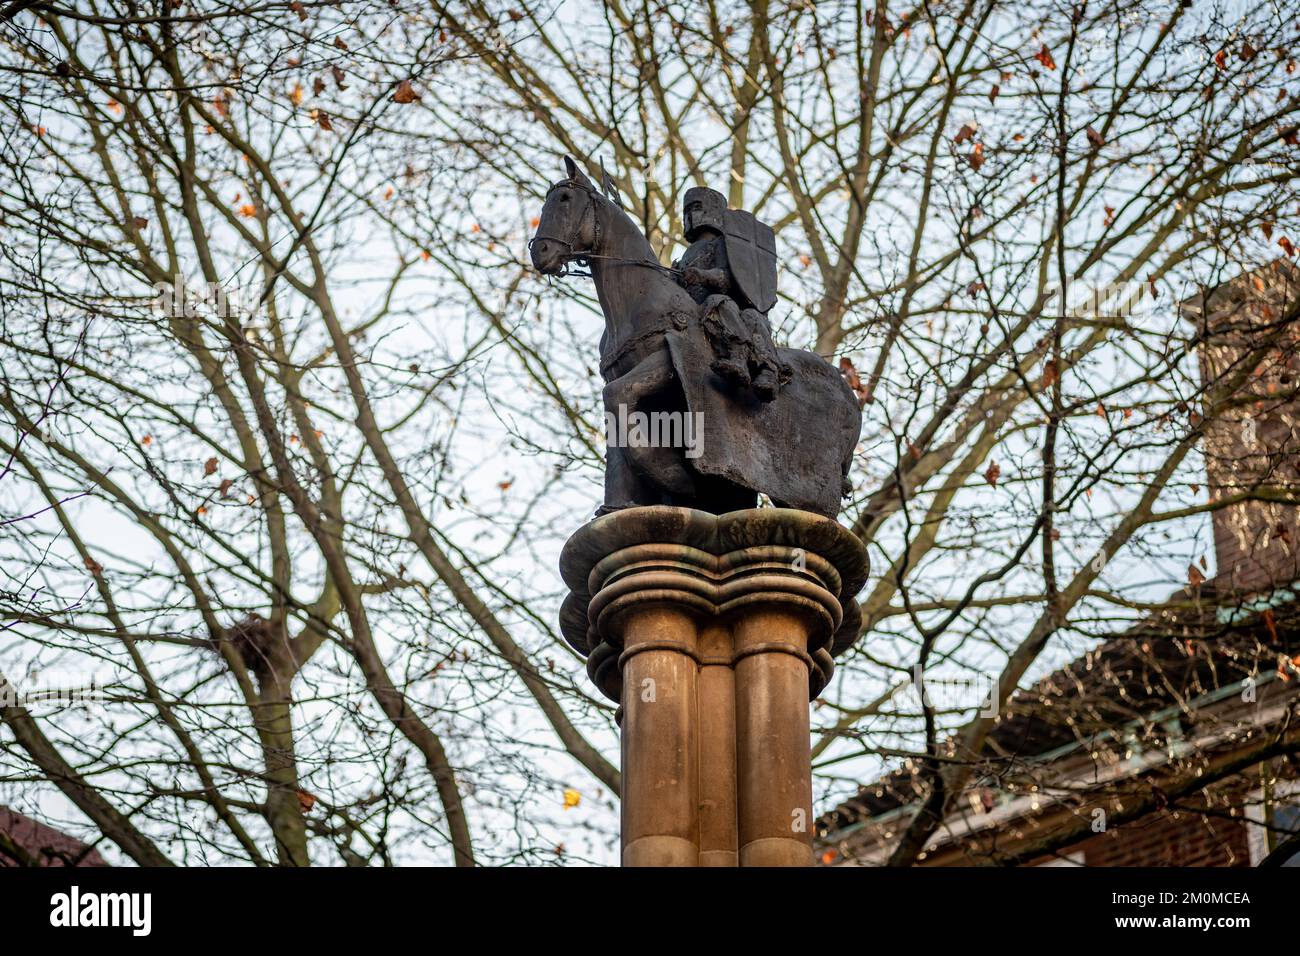 Colonne du millénaire dans la cour du Temple, à l'extérieur de l'église du Temple, montrant deux chevaliers sur un cheval, le sceau des Templiers. Londres, Royaume-Uni Banque D'Images